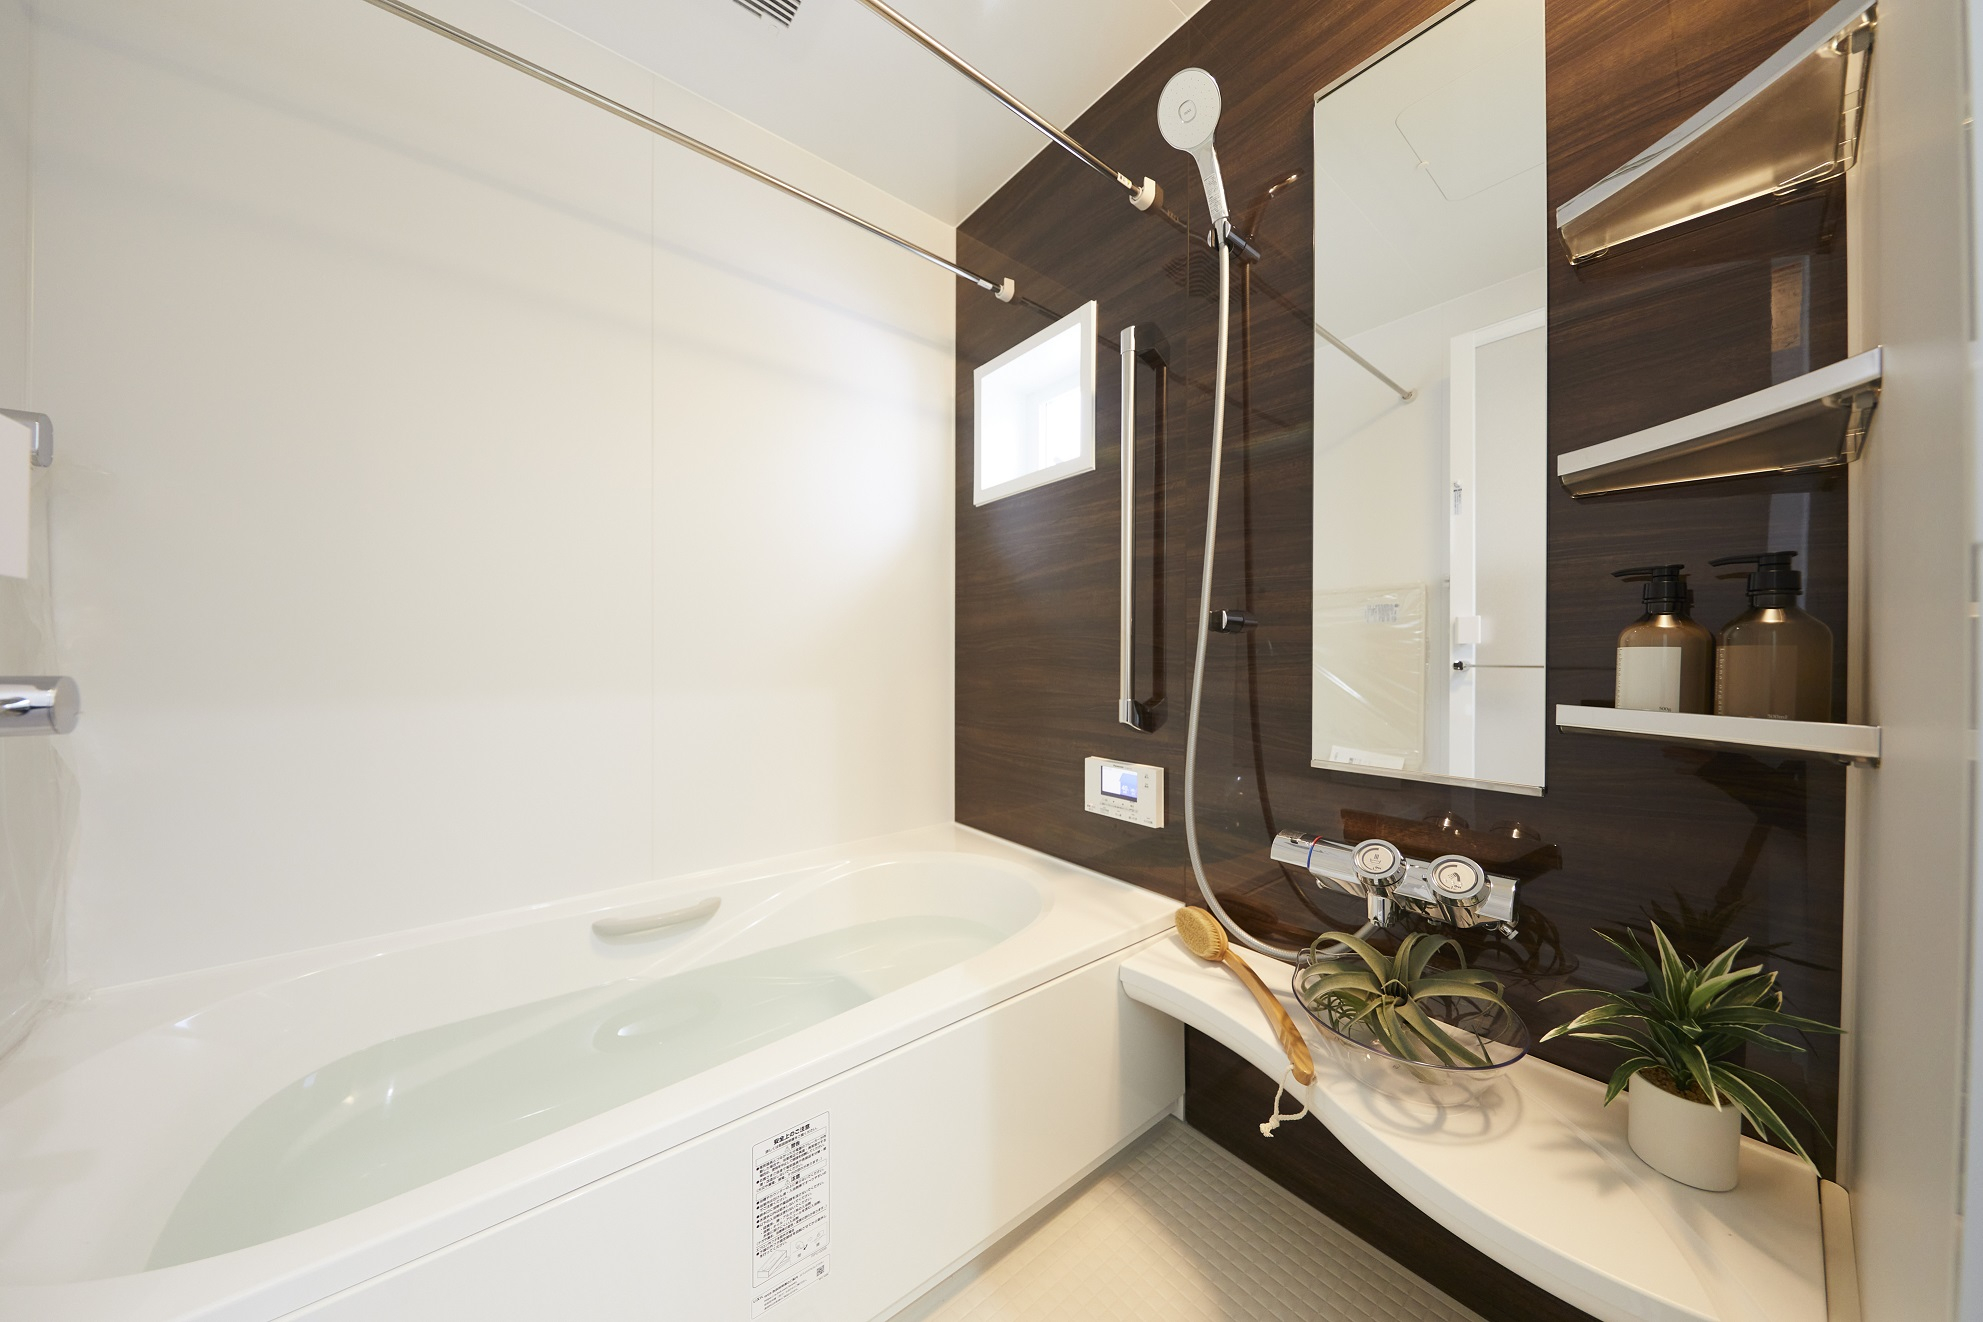 ■浴室＜モデル棟＞
どなたでも安心して入浴できるように、またぎやすい高さの低床浴槽を採用。
浴室暖房乾燥機など快適な設備も採用しています。（2022年1月撮影)